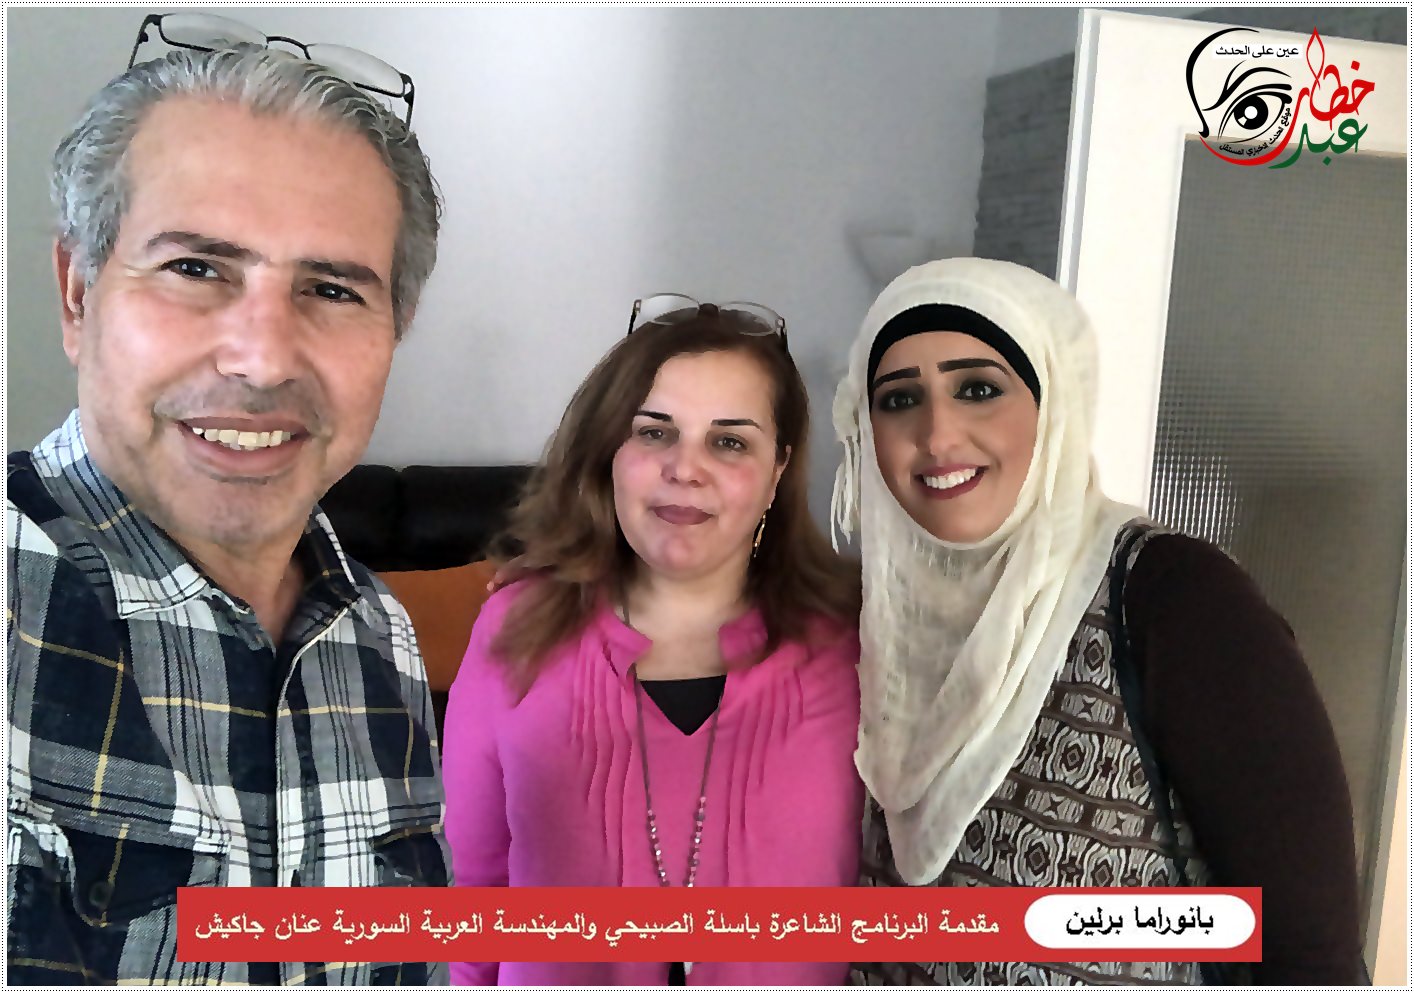 بانوراما برلين ضيفة الحلقة المهندسة العربية السورية عنان جاكيش